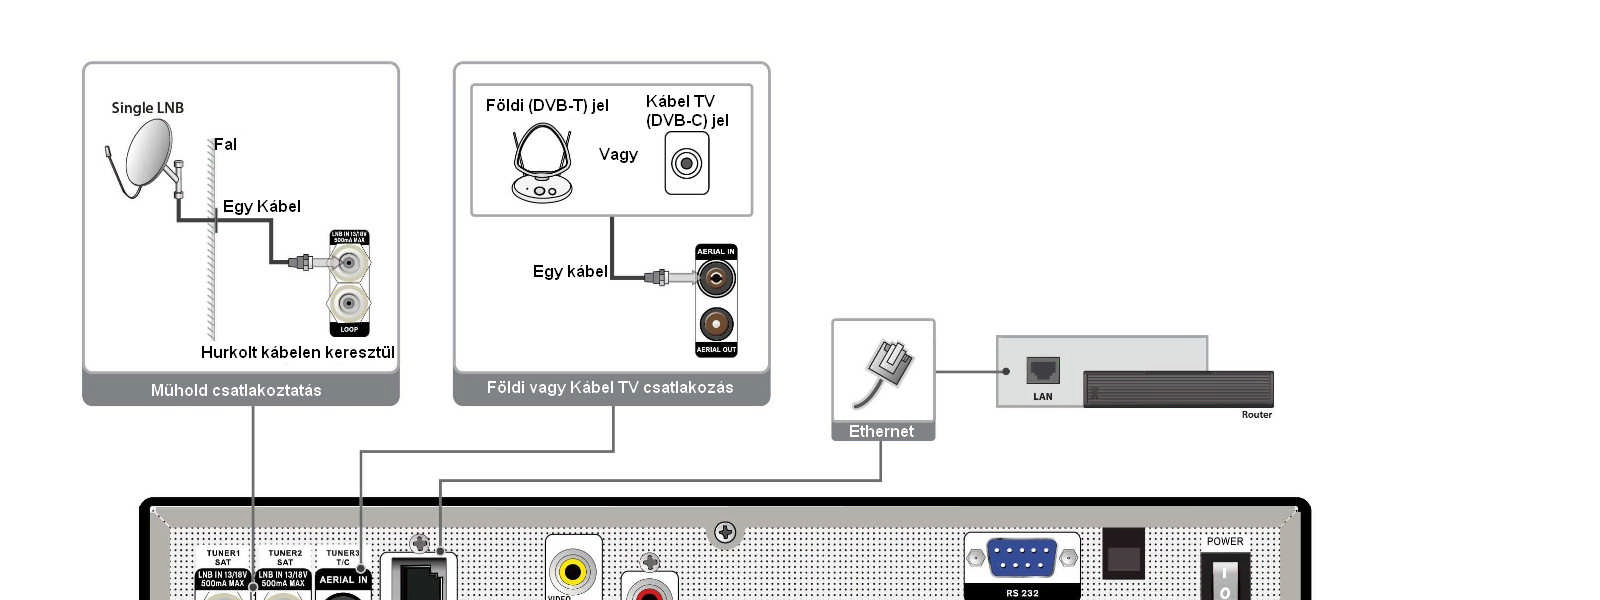 Spark Triplex 7.1 TV motoros forgatóval (DiSEqC 1.2) A koaxiális kábel egyik végét csatlakoztassa a vevőkészülék LNB IN bemenetére, a másikat pedig a DiSEqC 1.